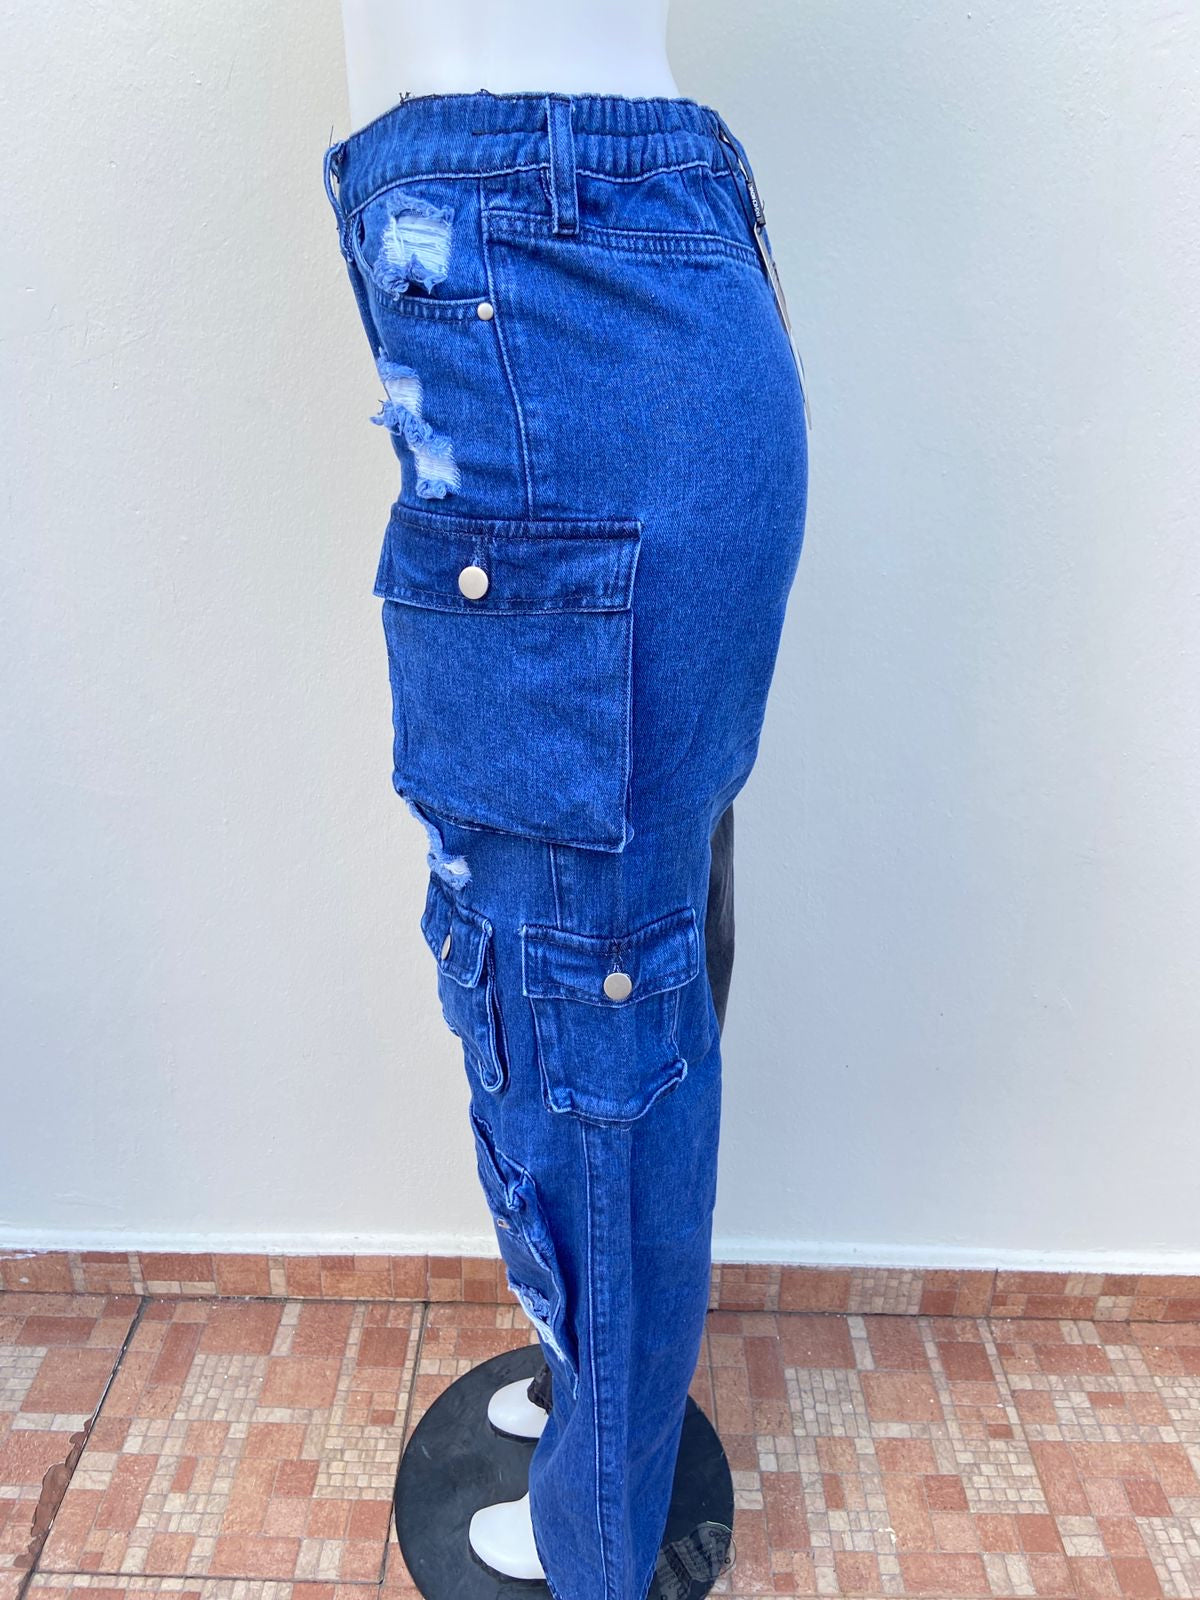 Pantalón FASHION NOVA original, mitad negro y mitad azul con bolsillos en ambos lados.